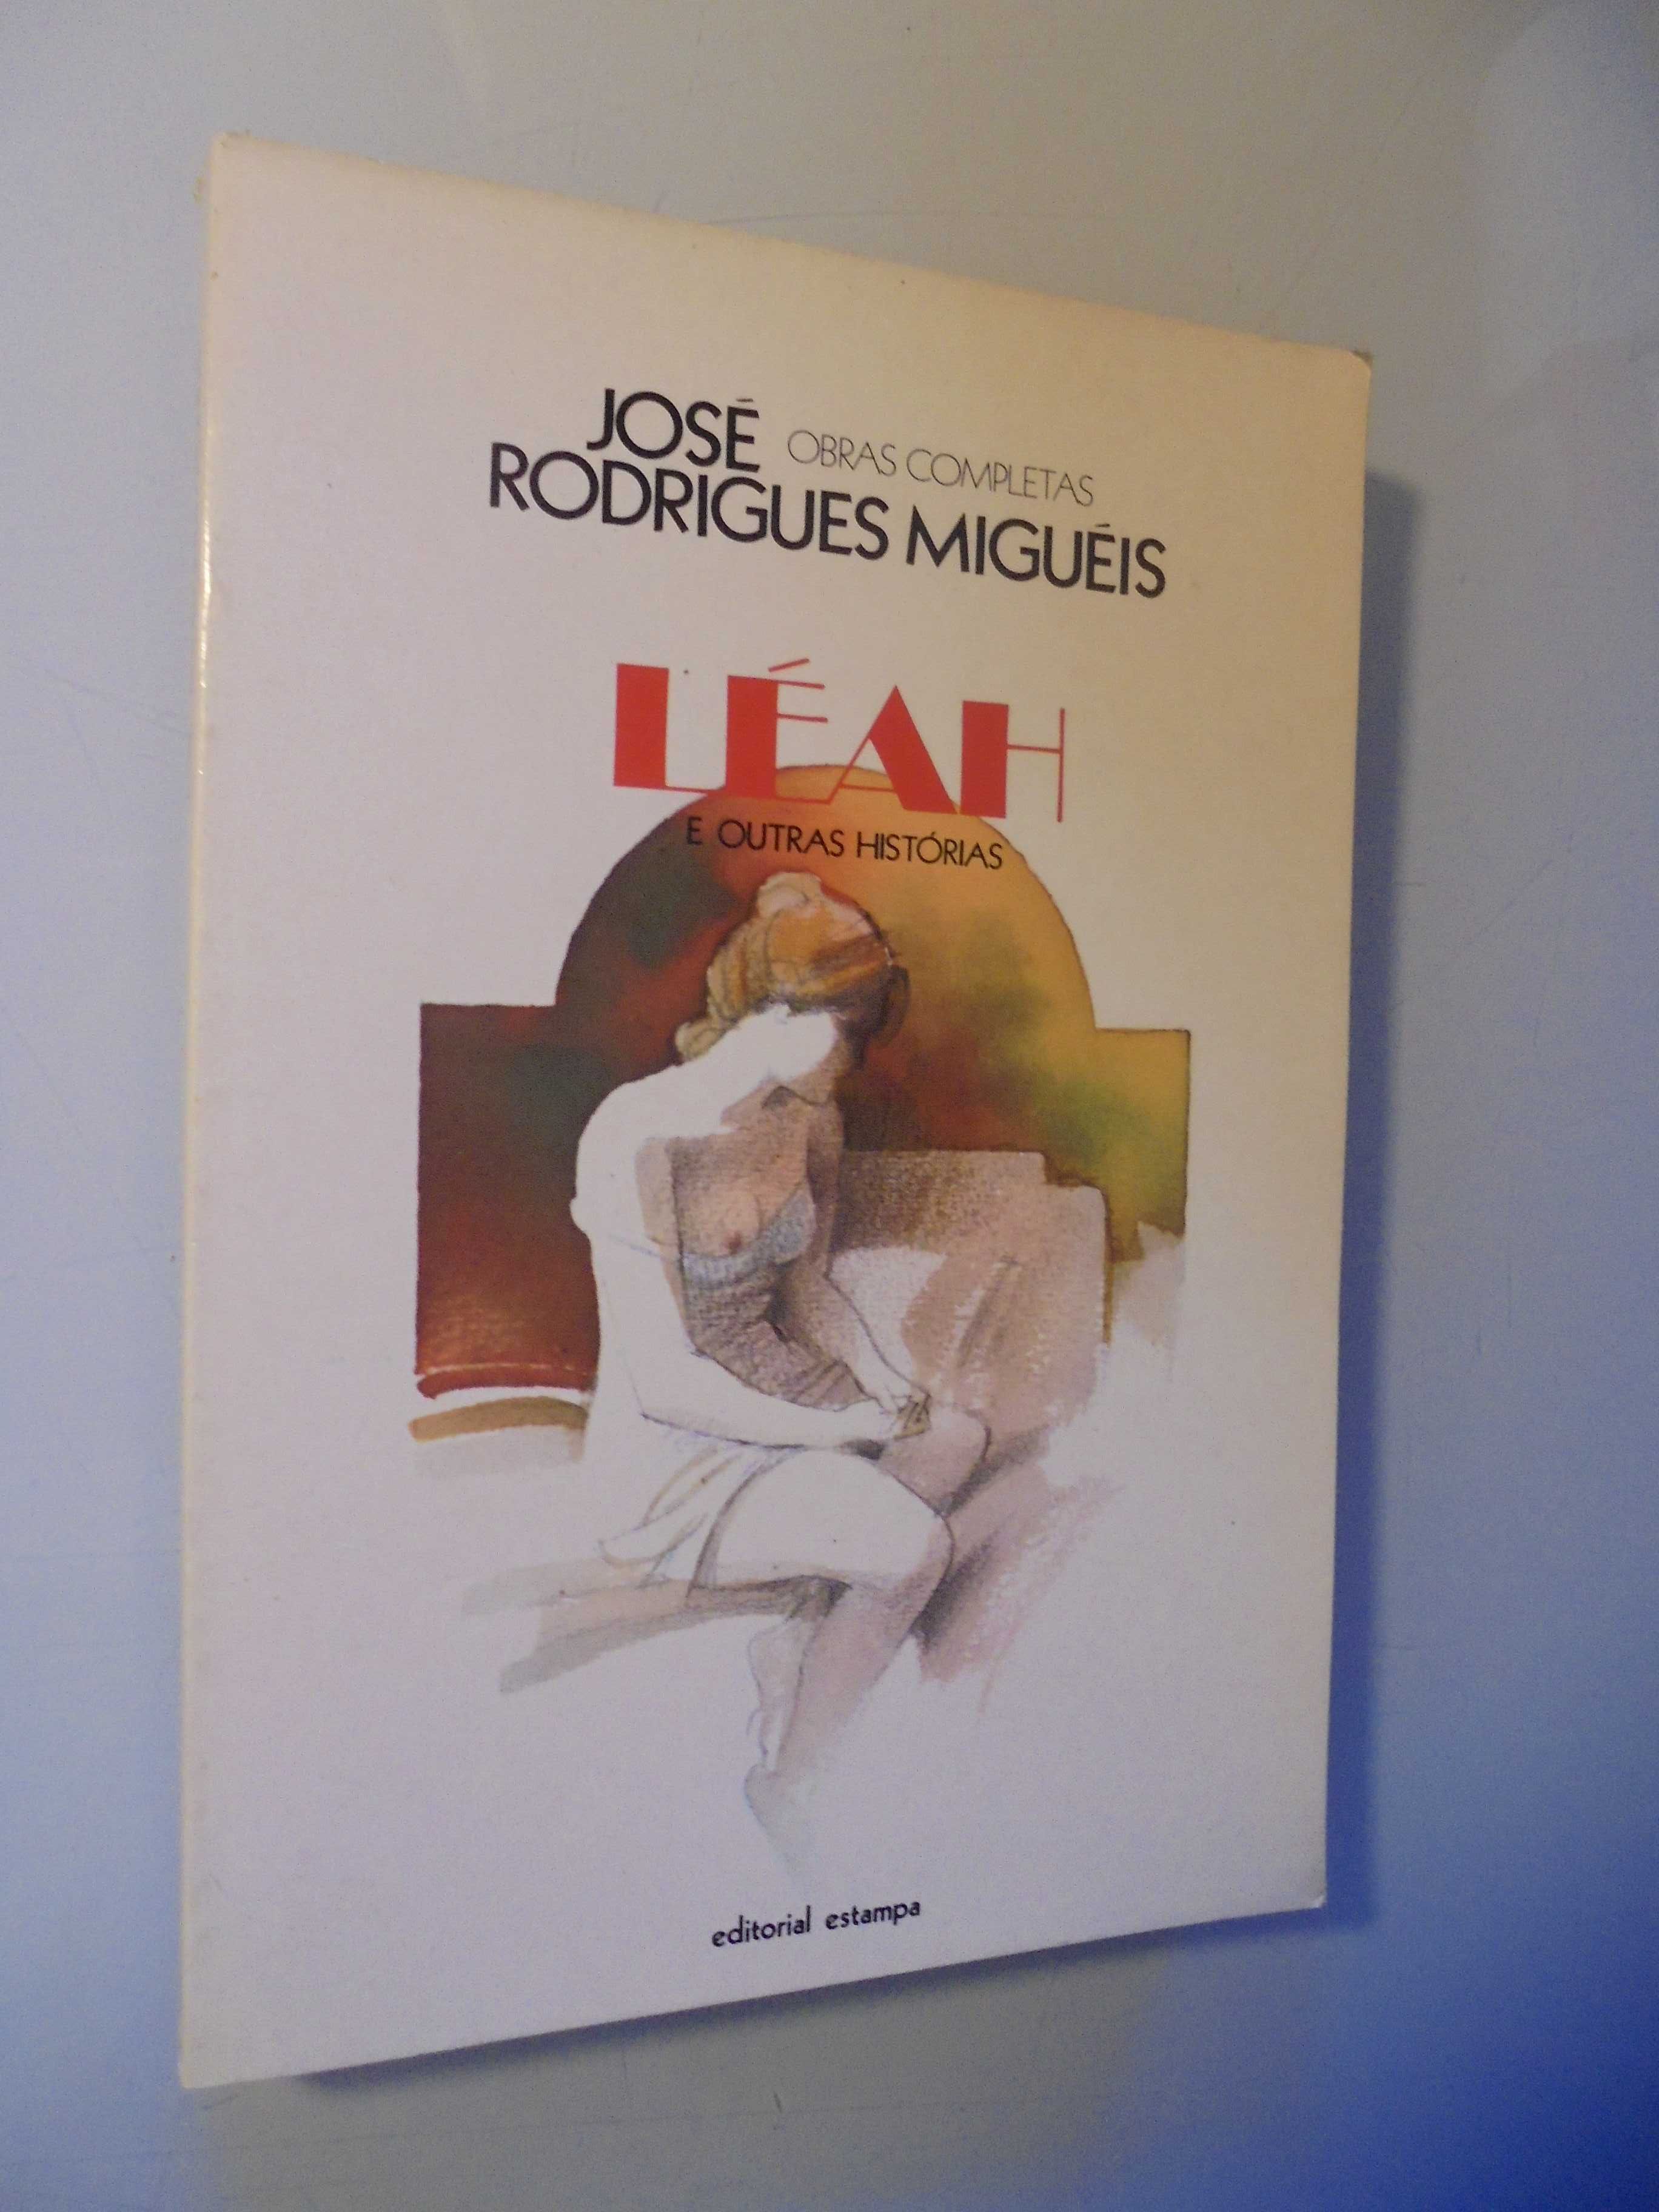 Migueis (José Rodrigues);Léah e outras Histórias